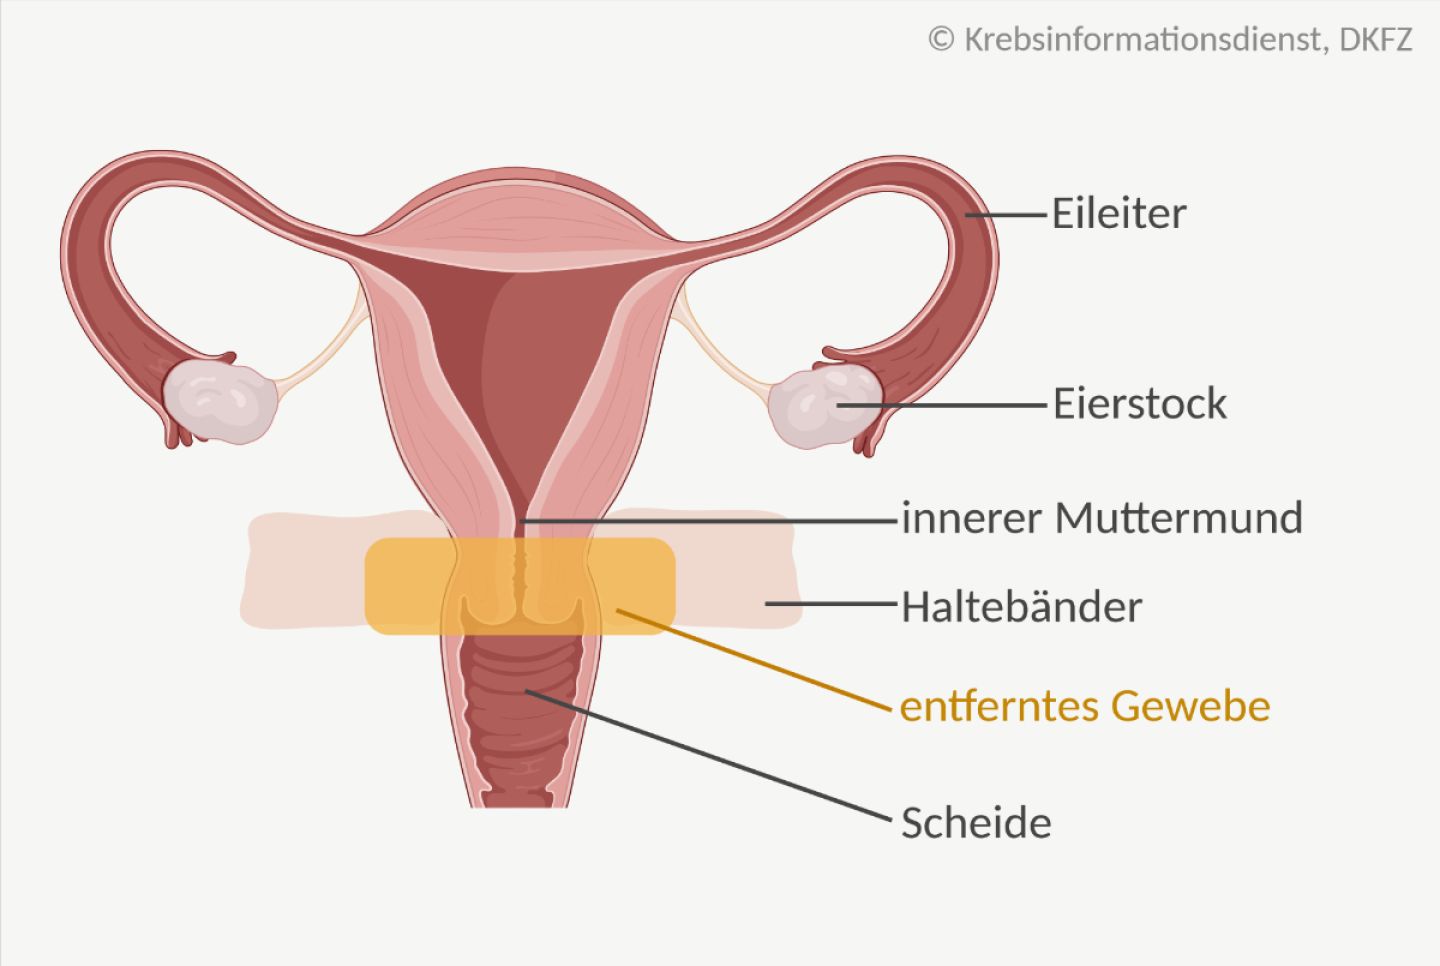 Anatomische Darstellung der Gebärmutter mit den Geweben, die bei der Trachelektomie herausoperiert werden.